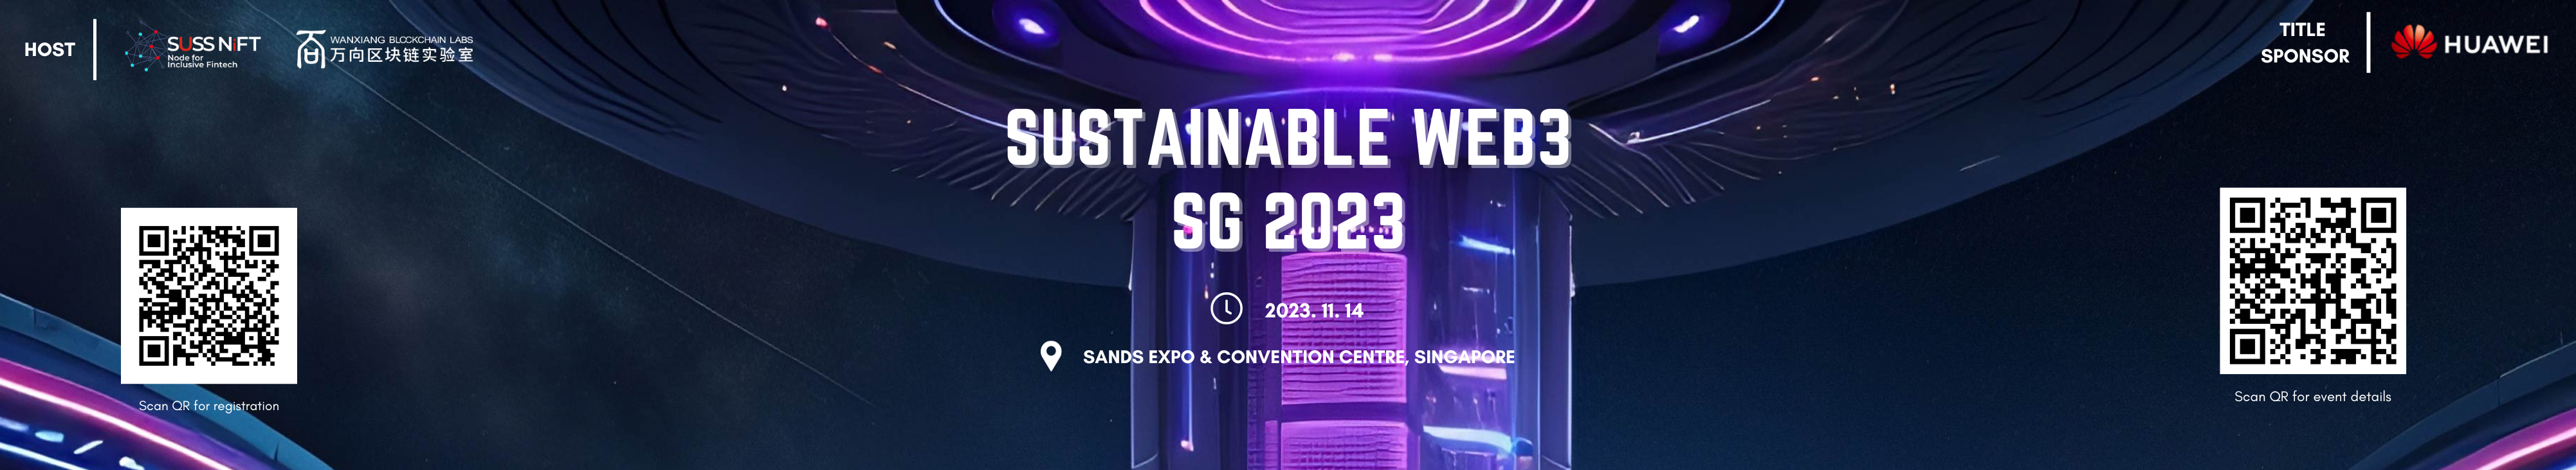 SBIZ Sustainable Web3 SG 2023